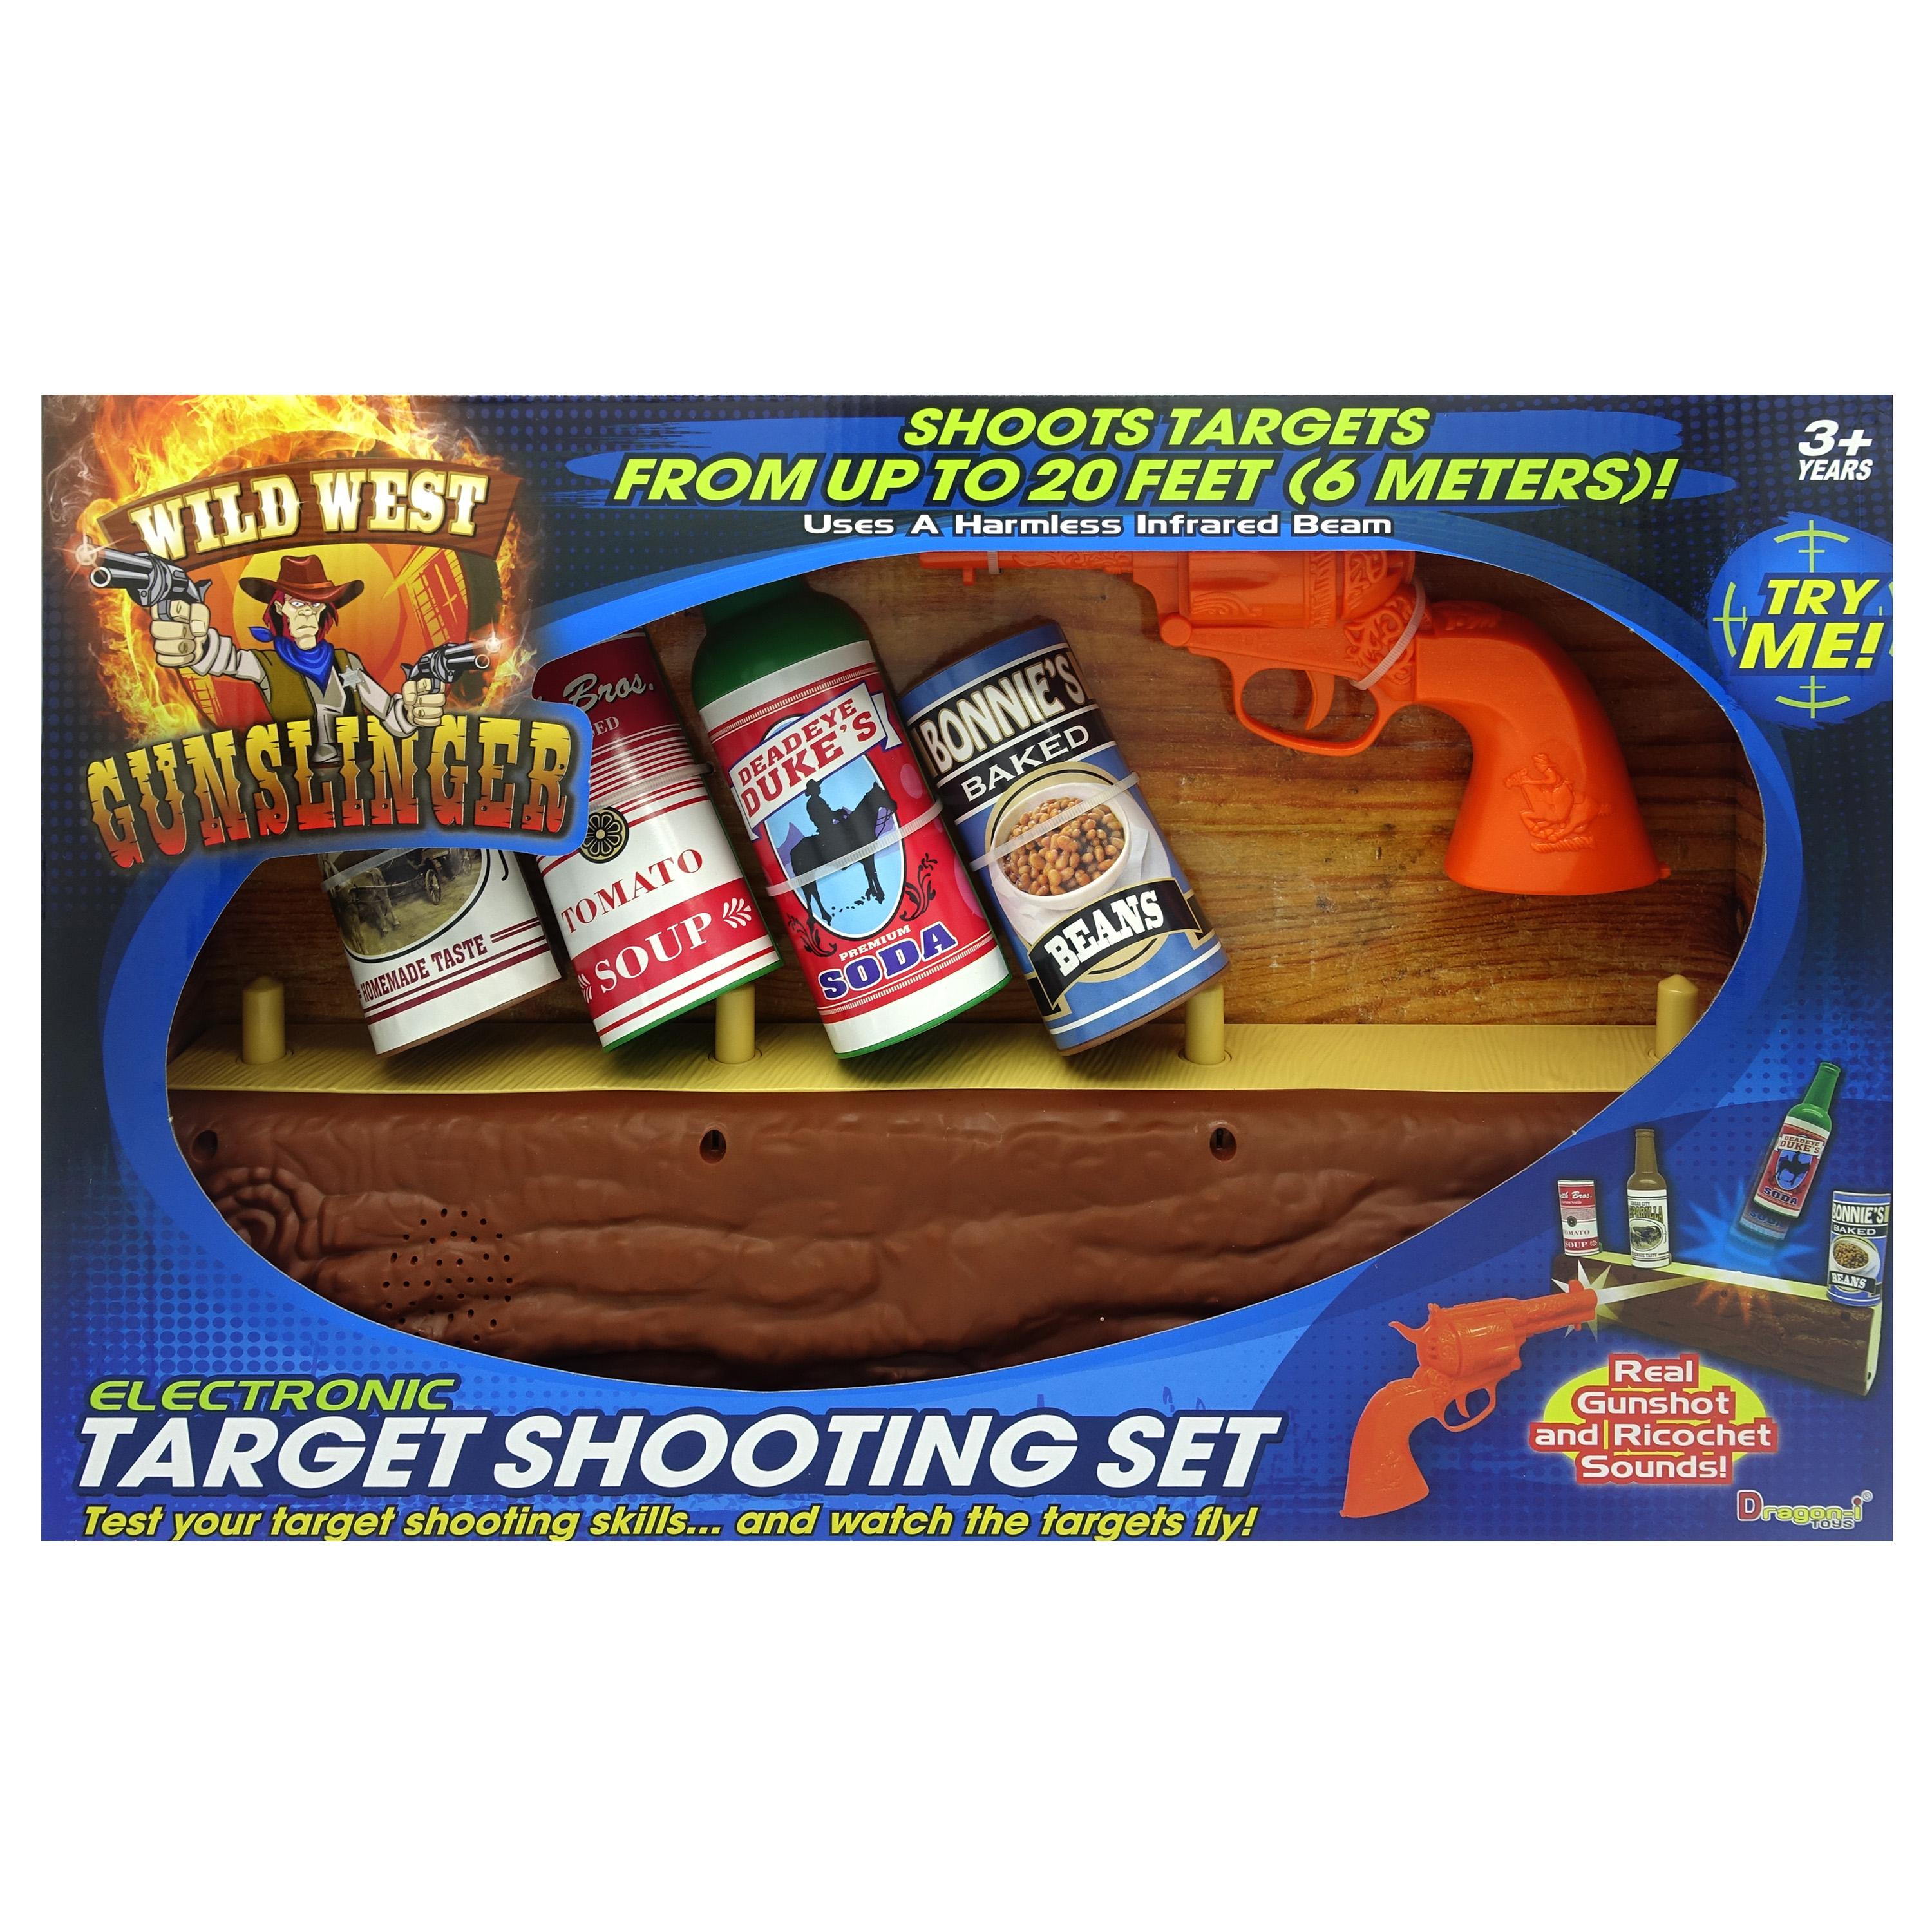 Wild West Gun Slinger target shooting set